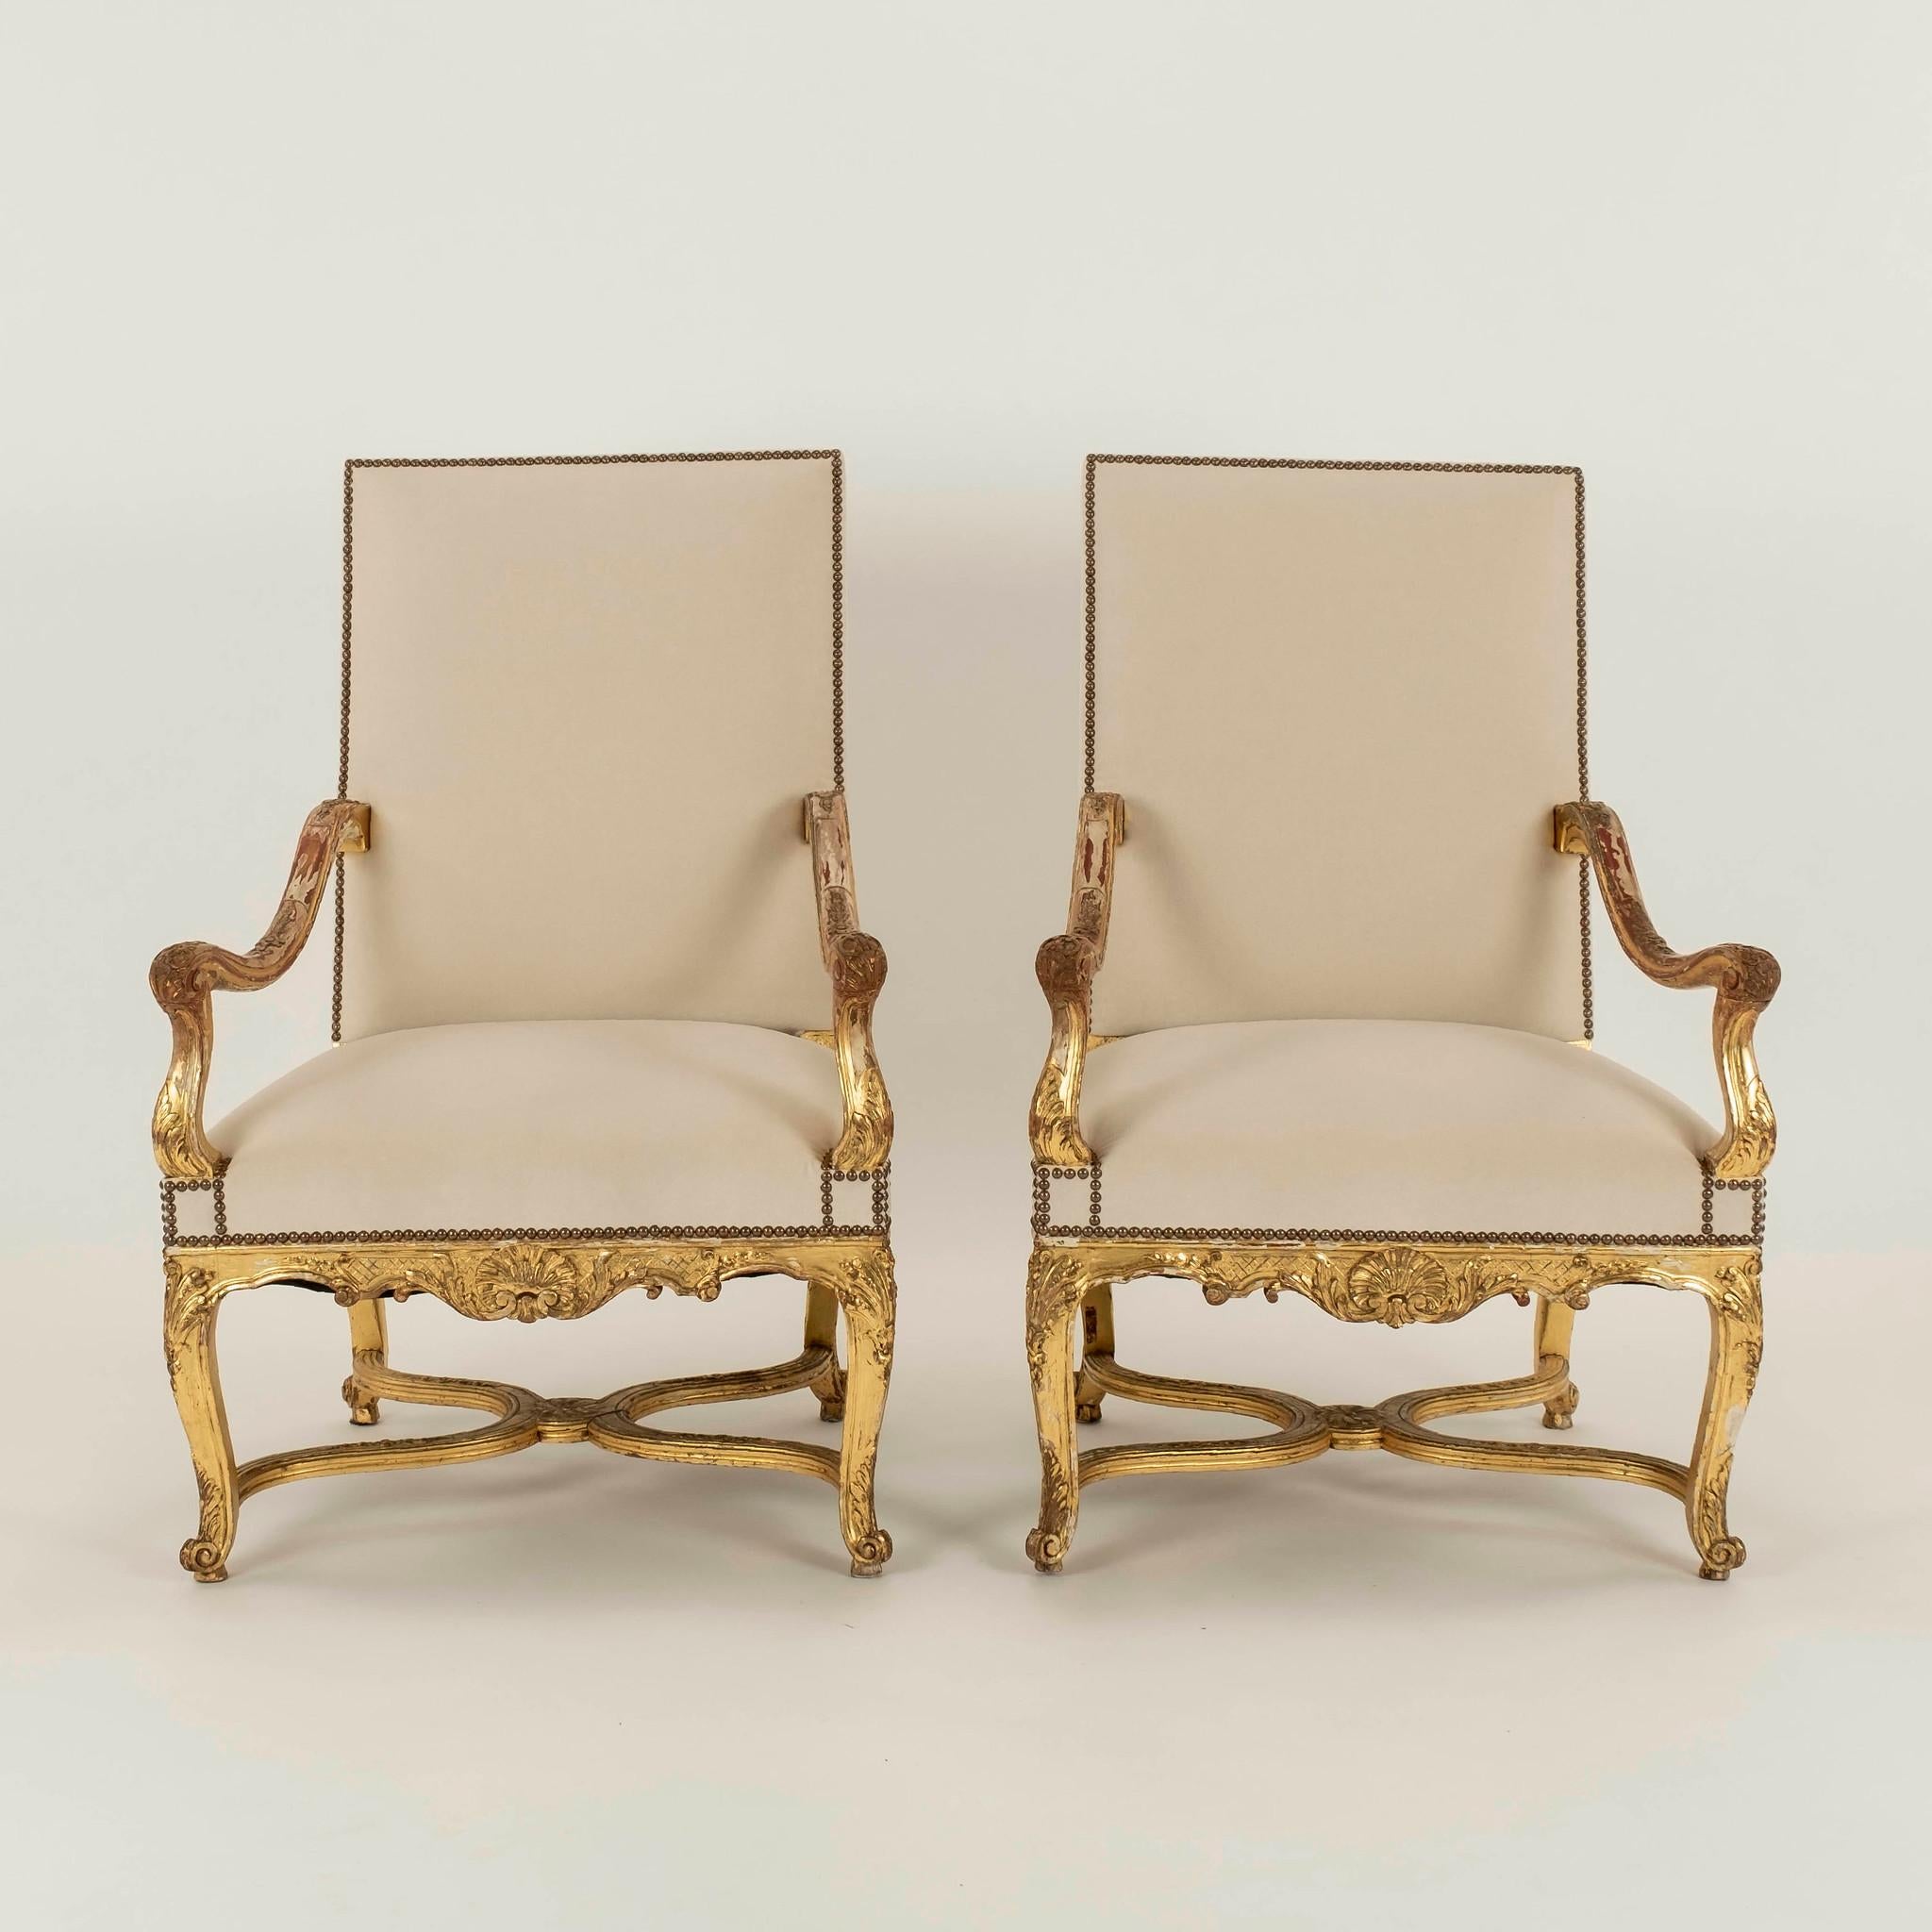 Paire de fauteuils en bois doré de style Louis XV du 19ème siècle, nouvellement tapissés d'un velours écru crémeux avec des détails en tête de clous. Également disponible C.I.C.
   